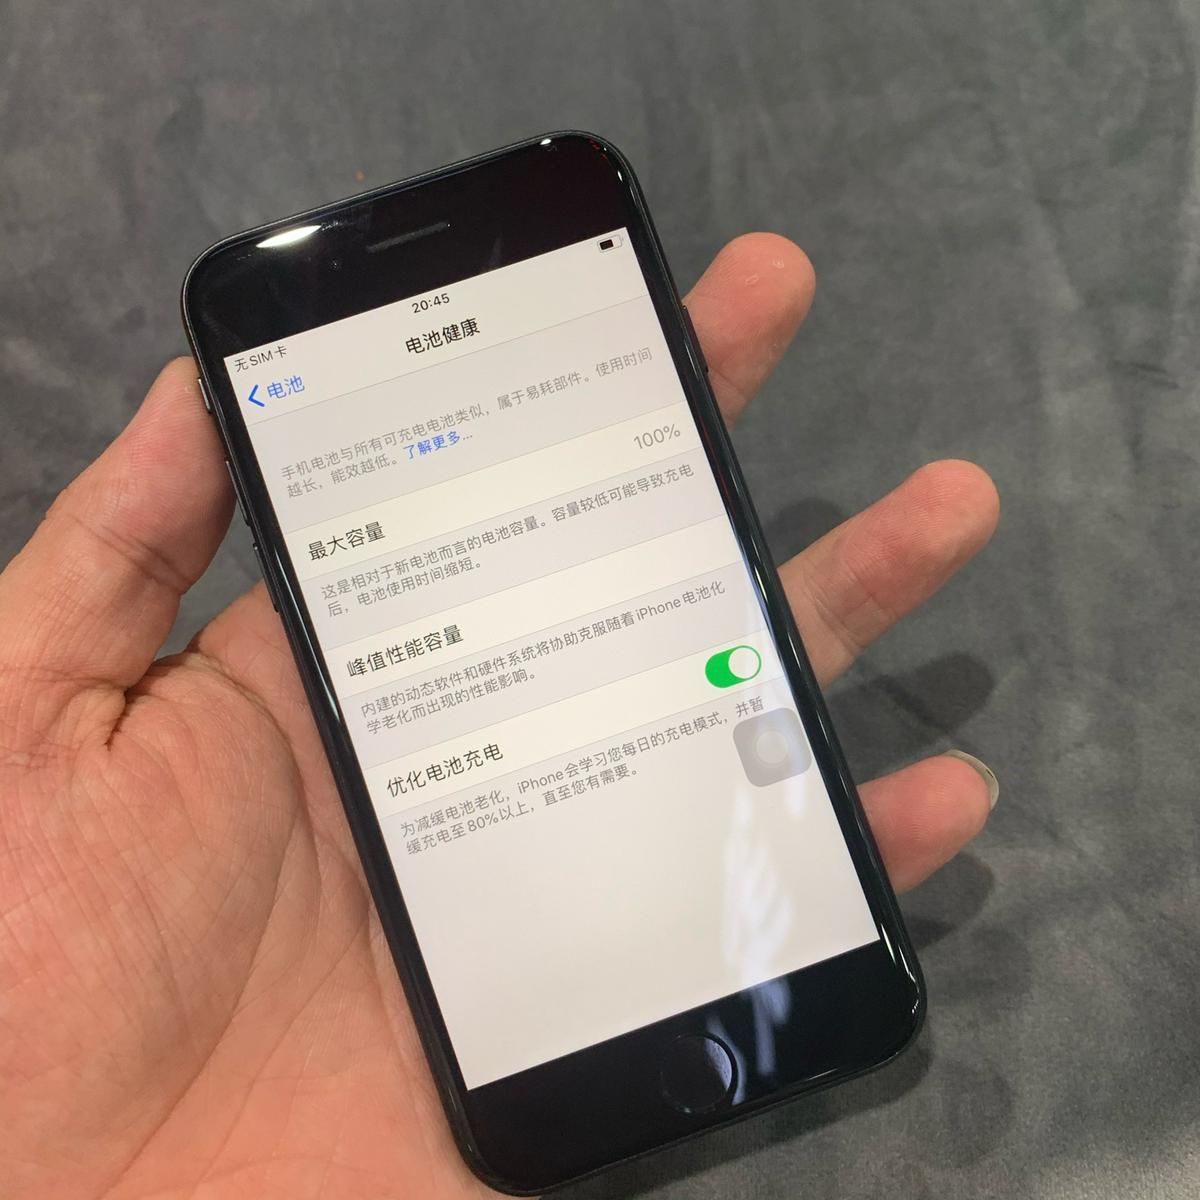 苹果se2 国行 64G成色可以 - 手机/通讯 重庆社区